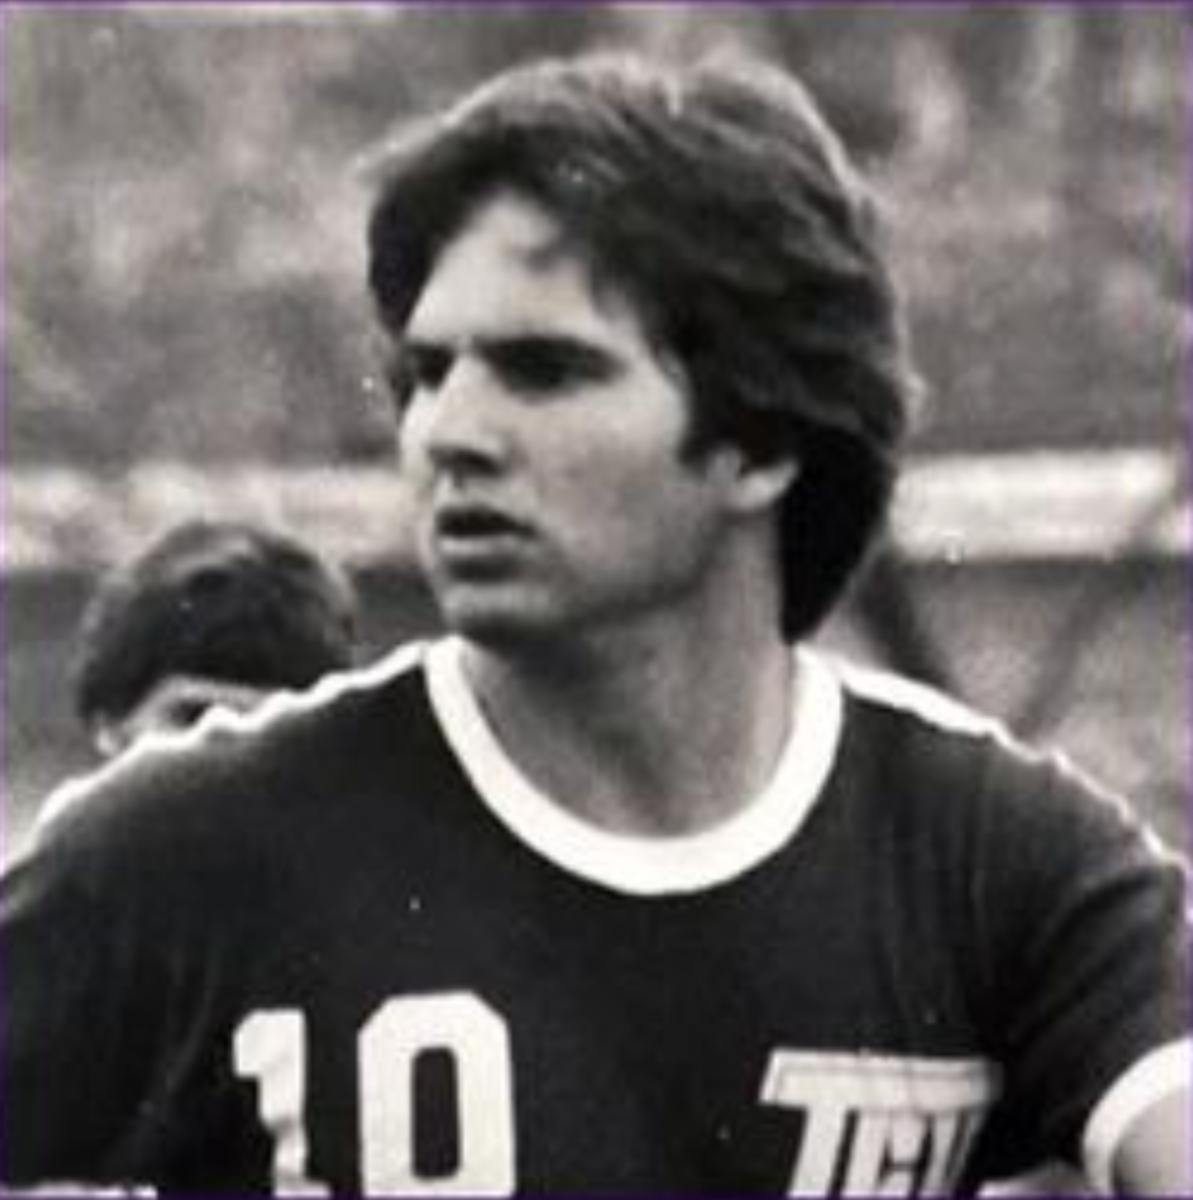 David Medanich played soccer for TCU. (gofrogs.com)